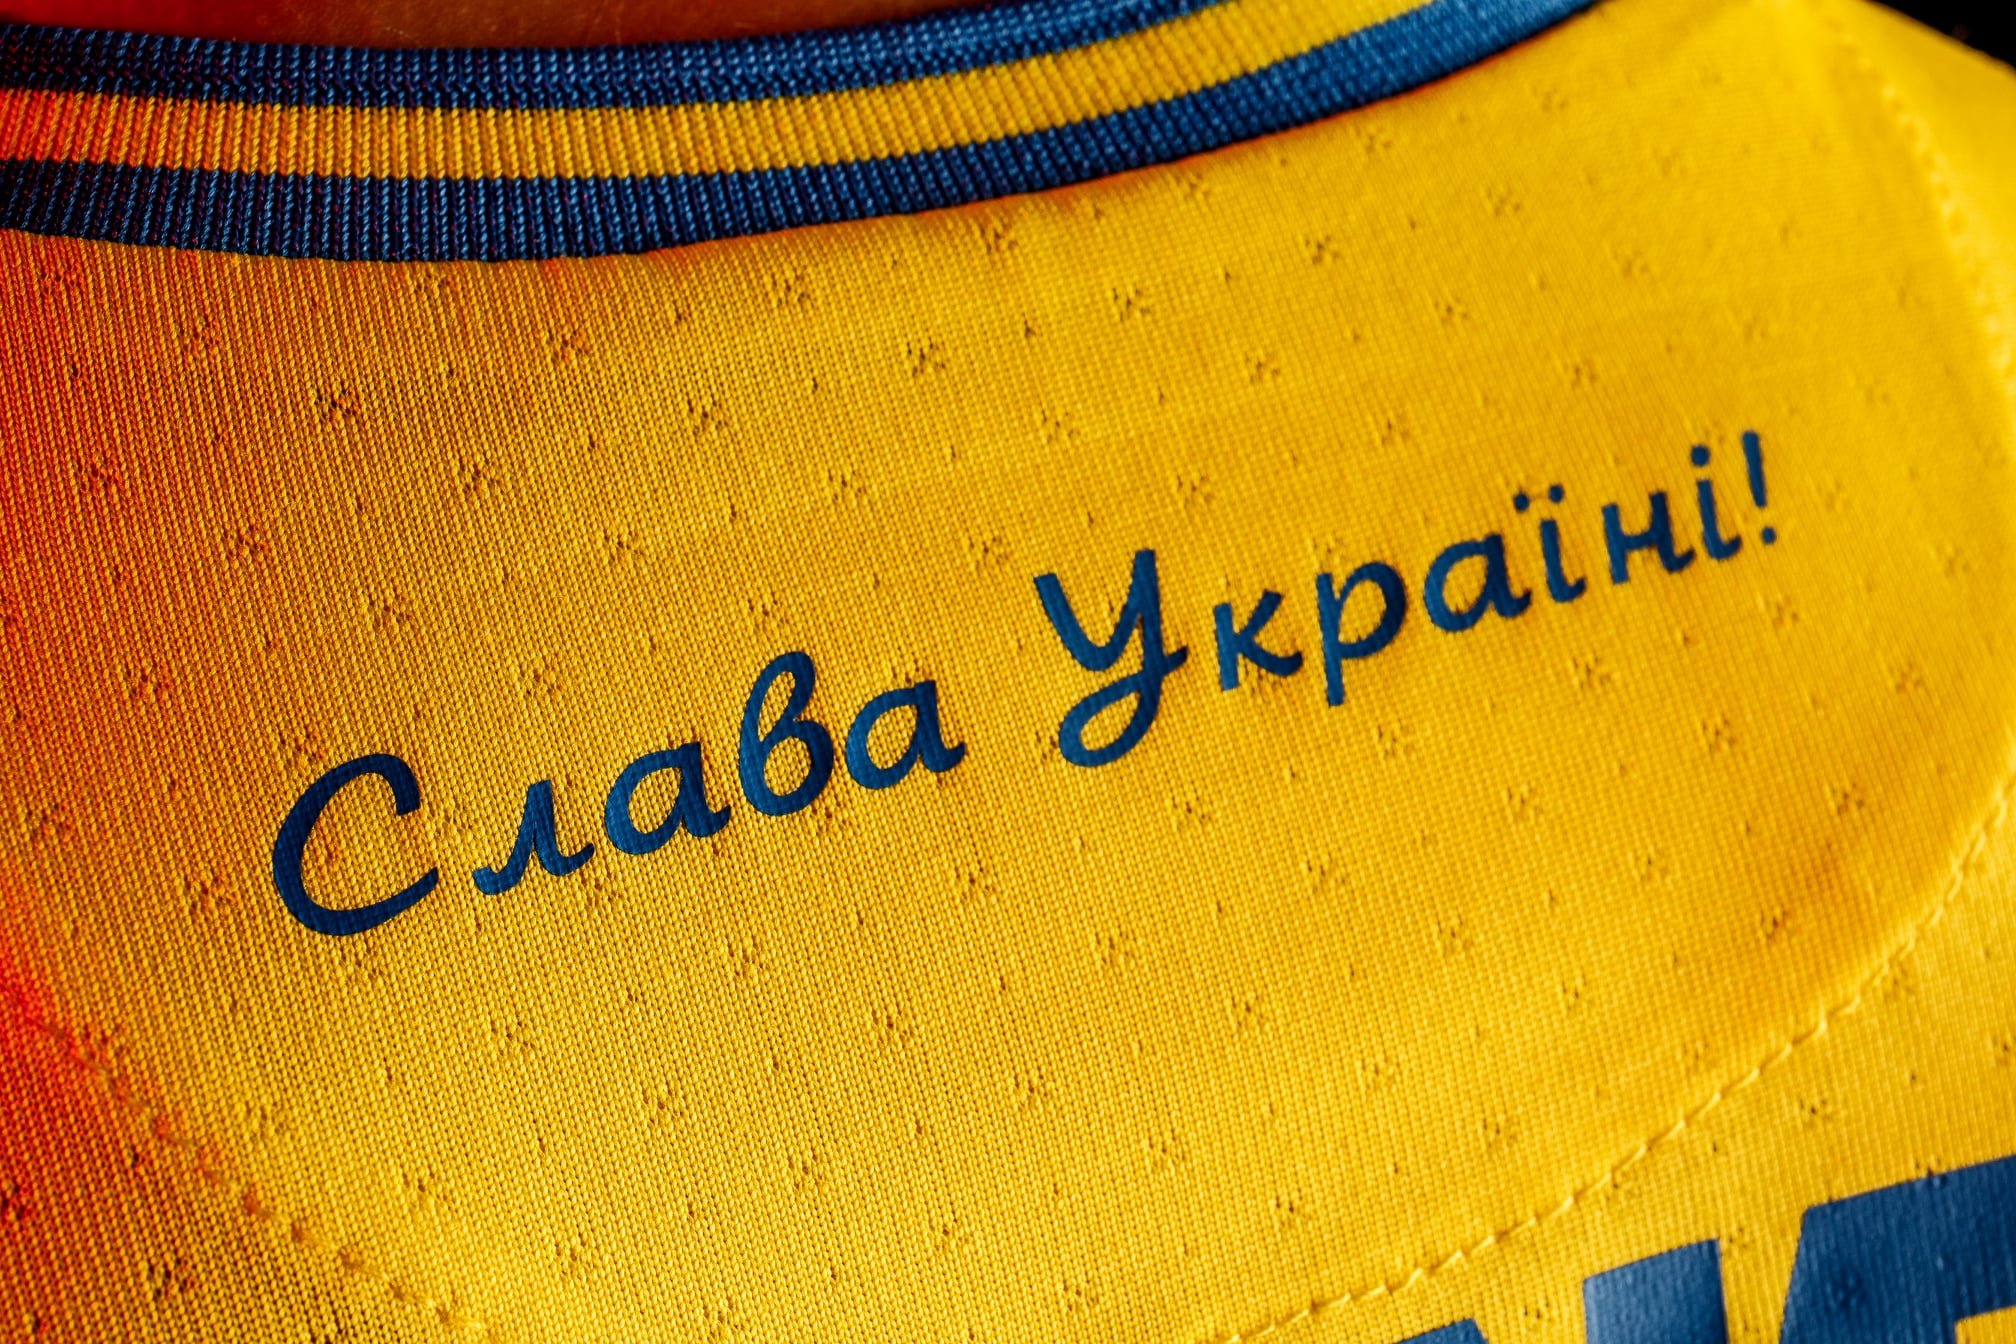 УАФ официально утвердила футбольные лозунги «Слава Україні!» и «Героям слава!»